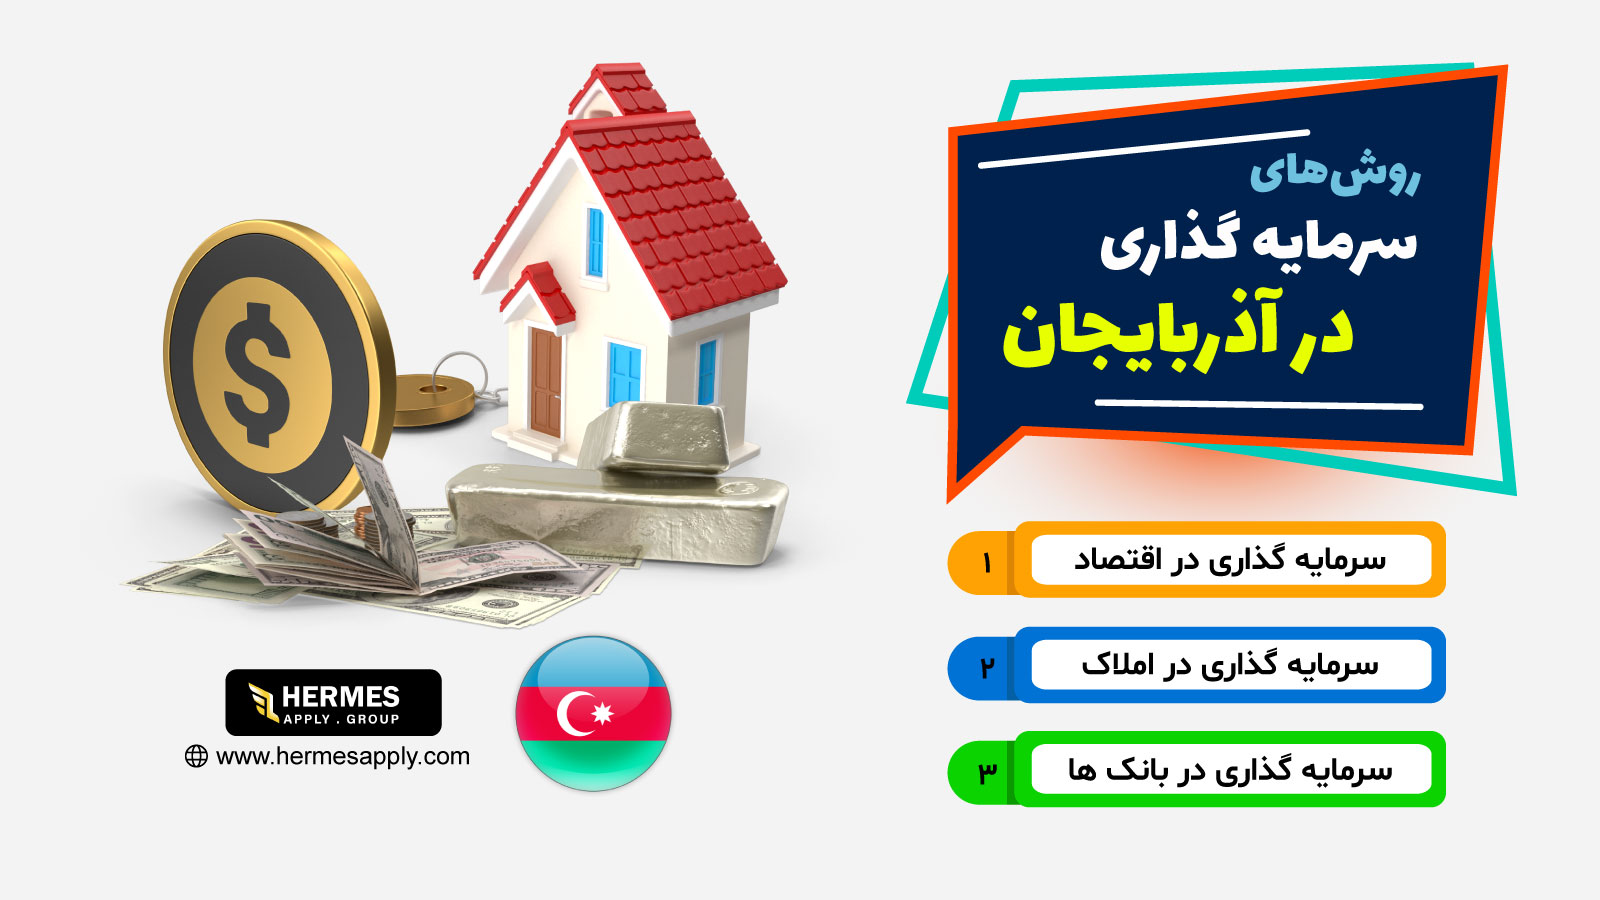 روش های سرمایه گذاری در آذربایجان